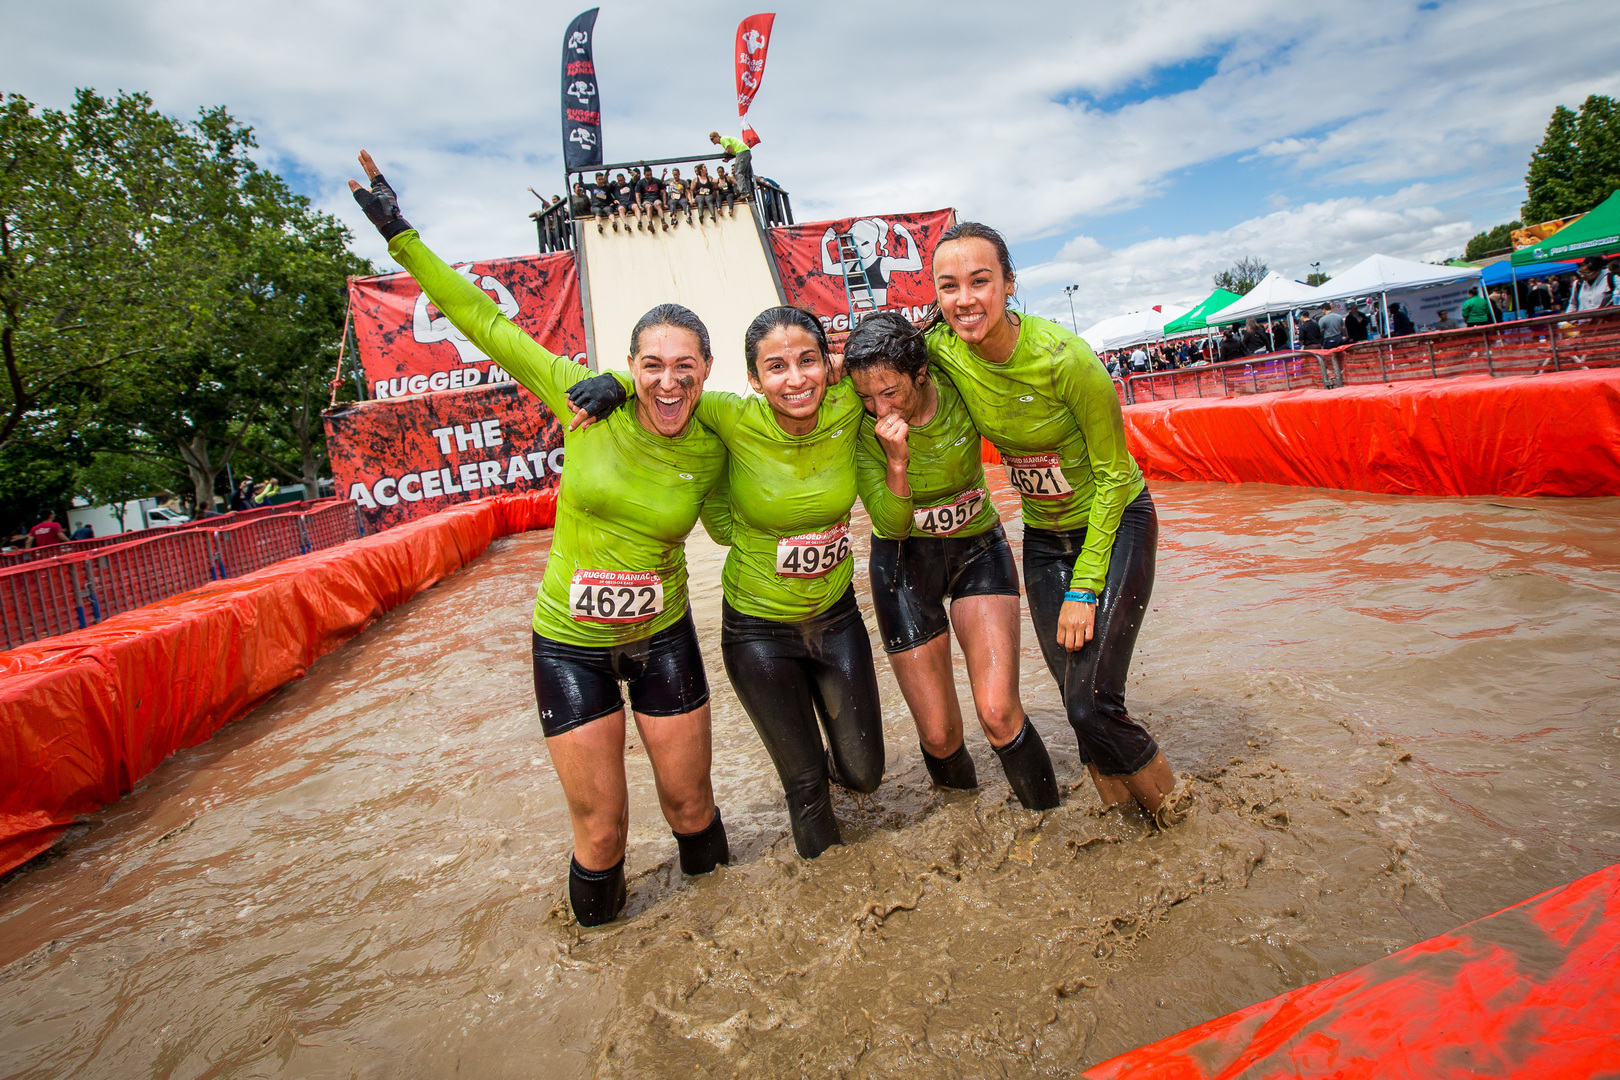 Best Mud Run Obstacles - La Ruta